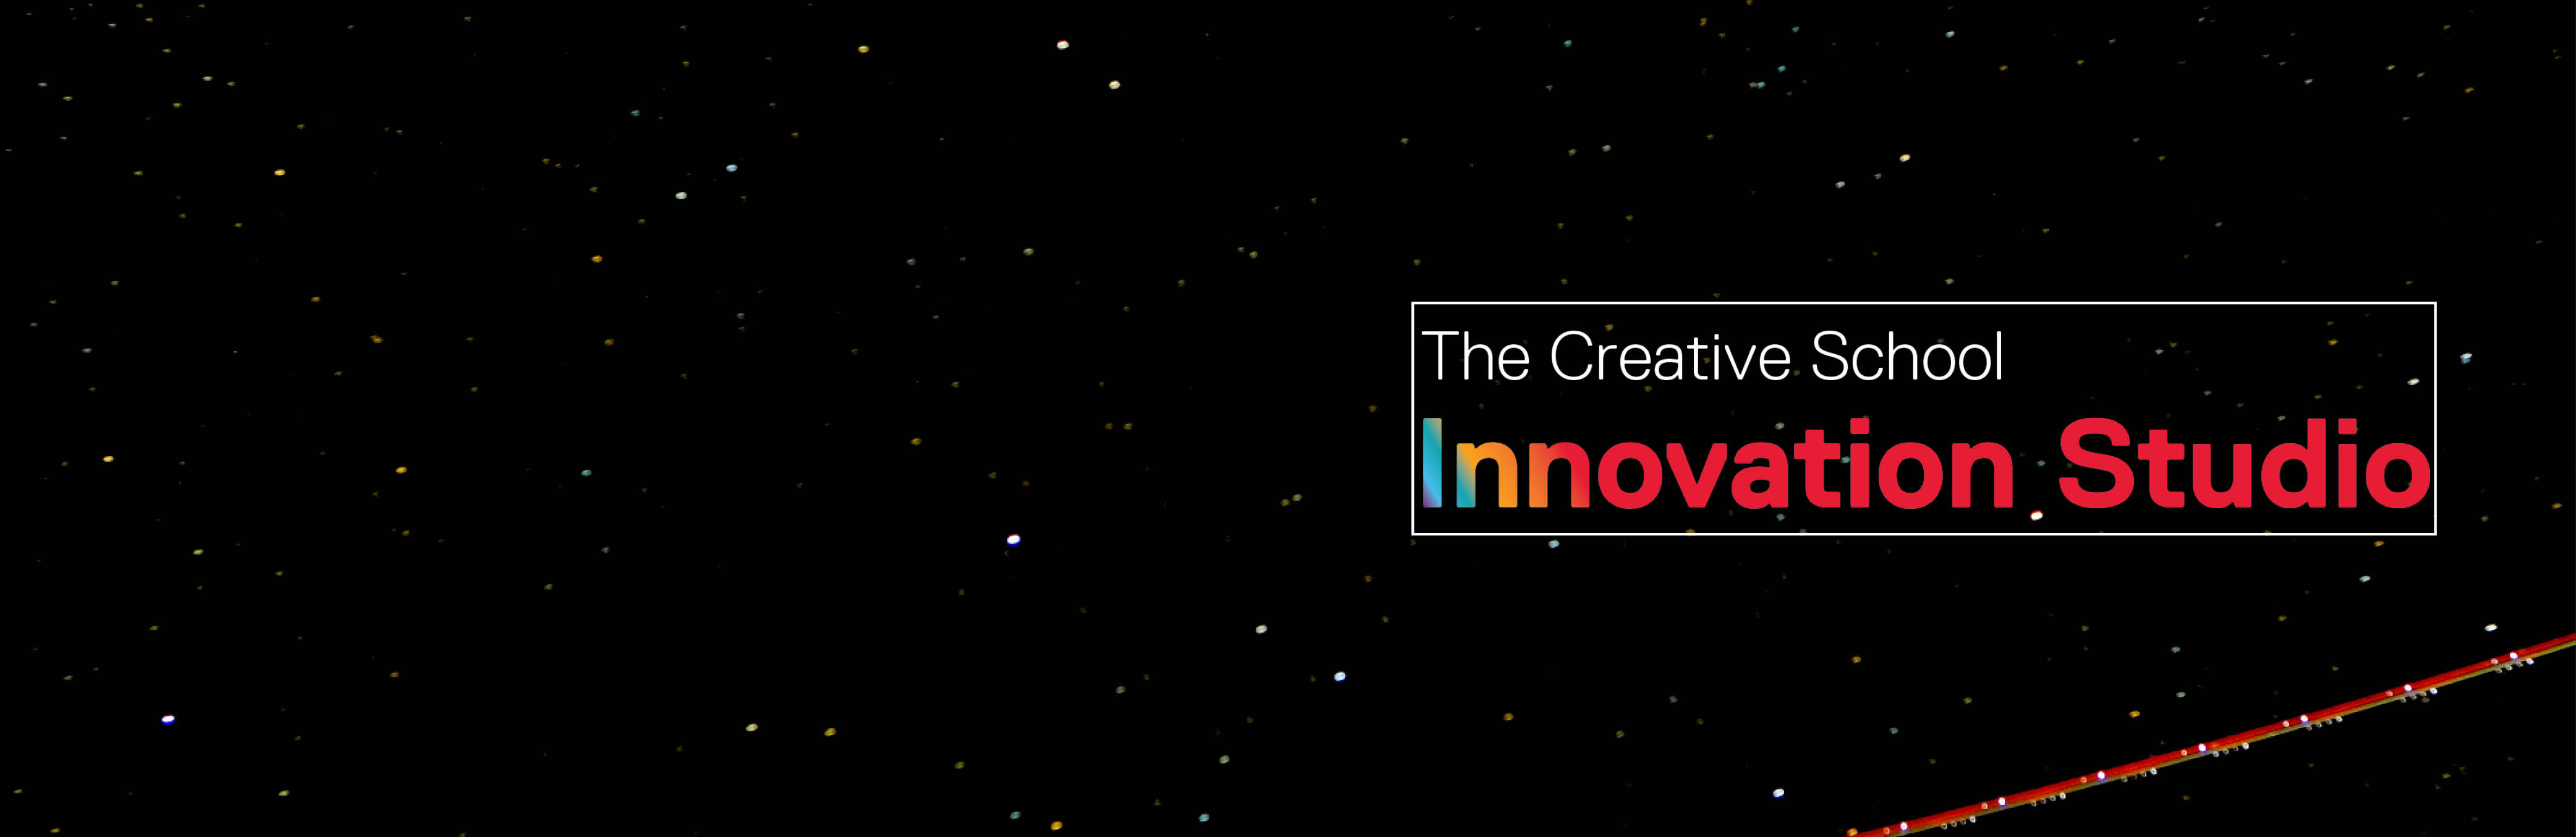 Innovation studio new logo banner